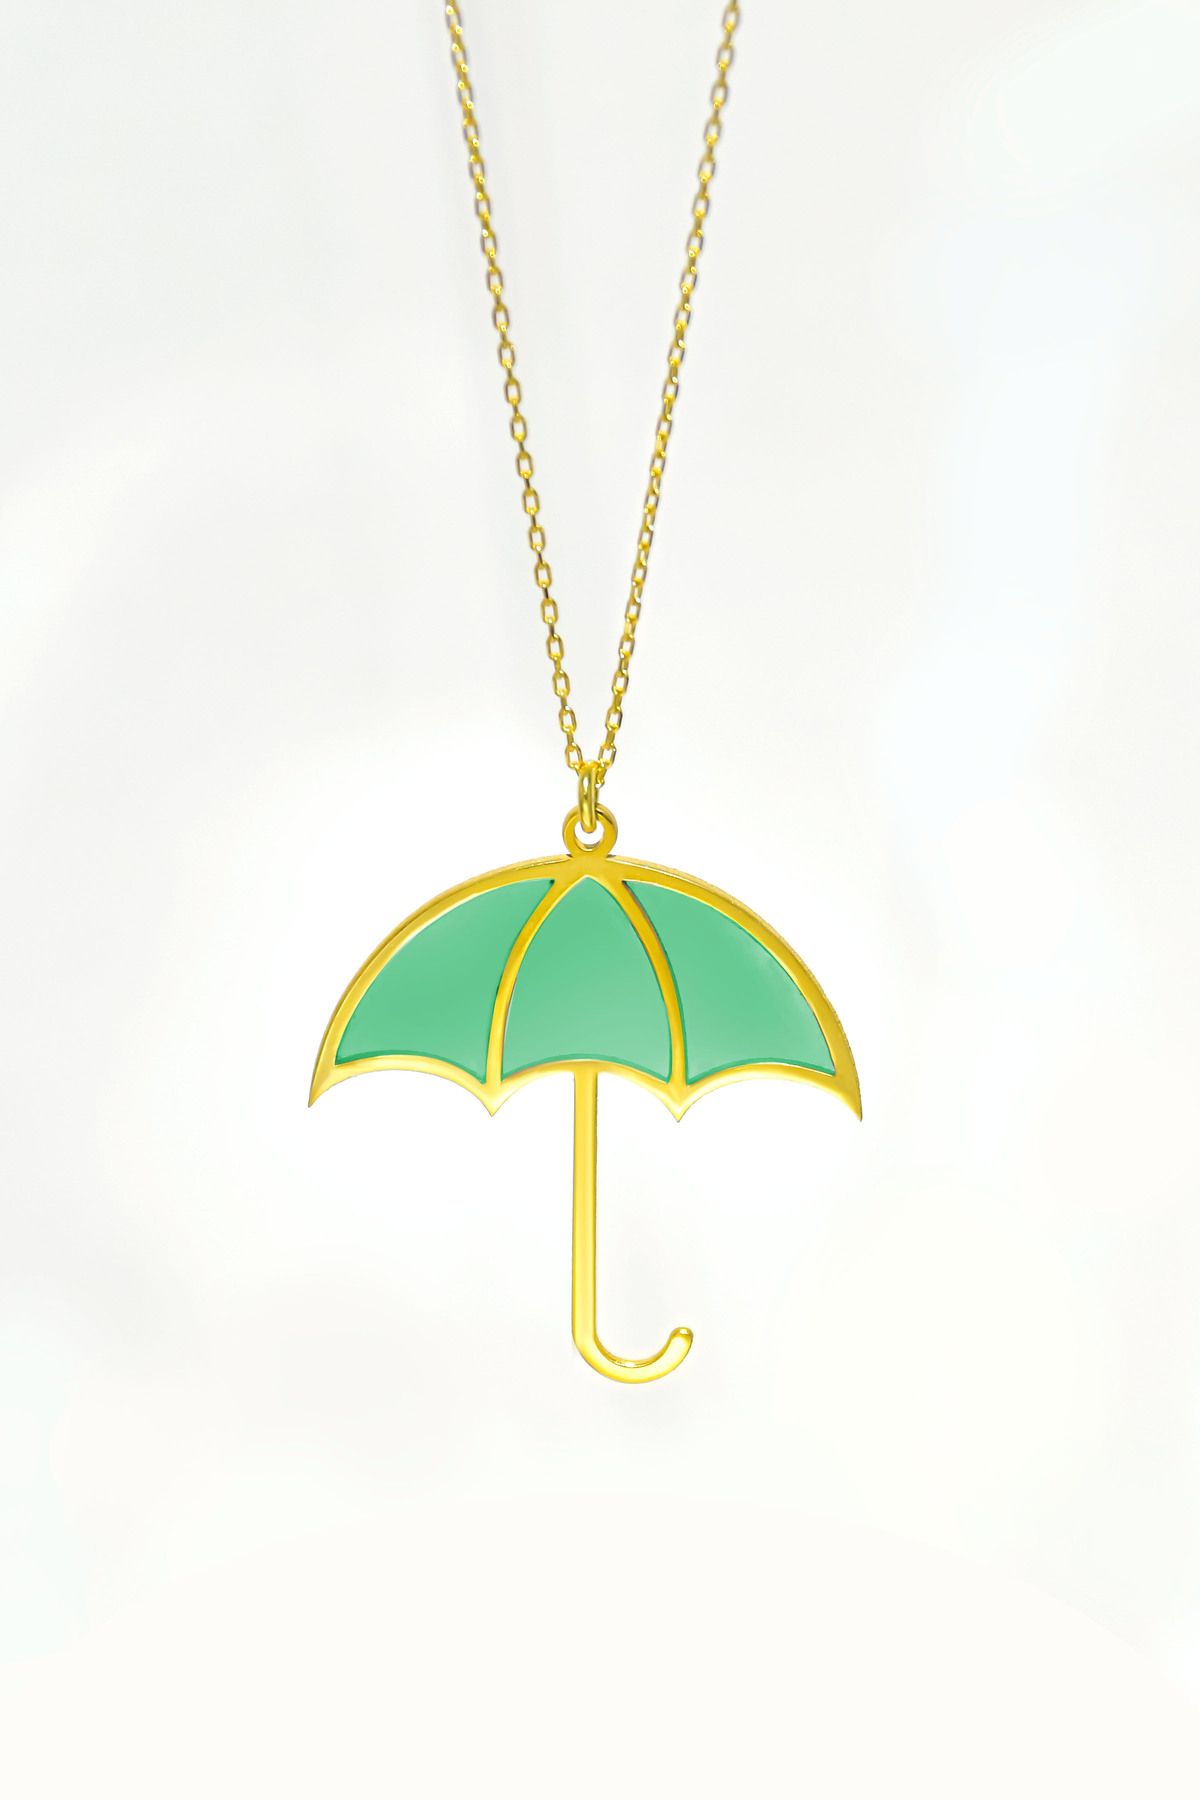 Papatya Silver 925 Ayar Gümüş Gold Kaplama Parlayan Rüya Serisi Tasarım Ebruli Yeşil Cam Boyalı Şemsiye Kolye